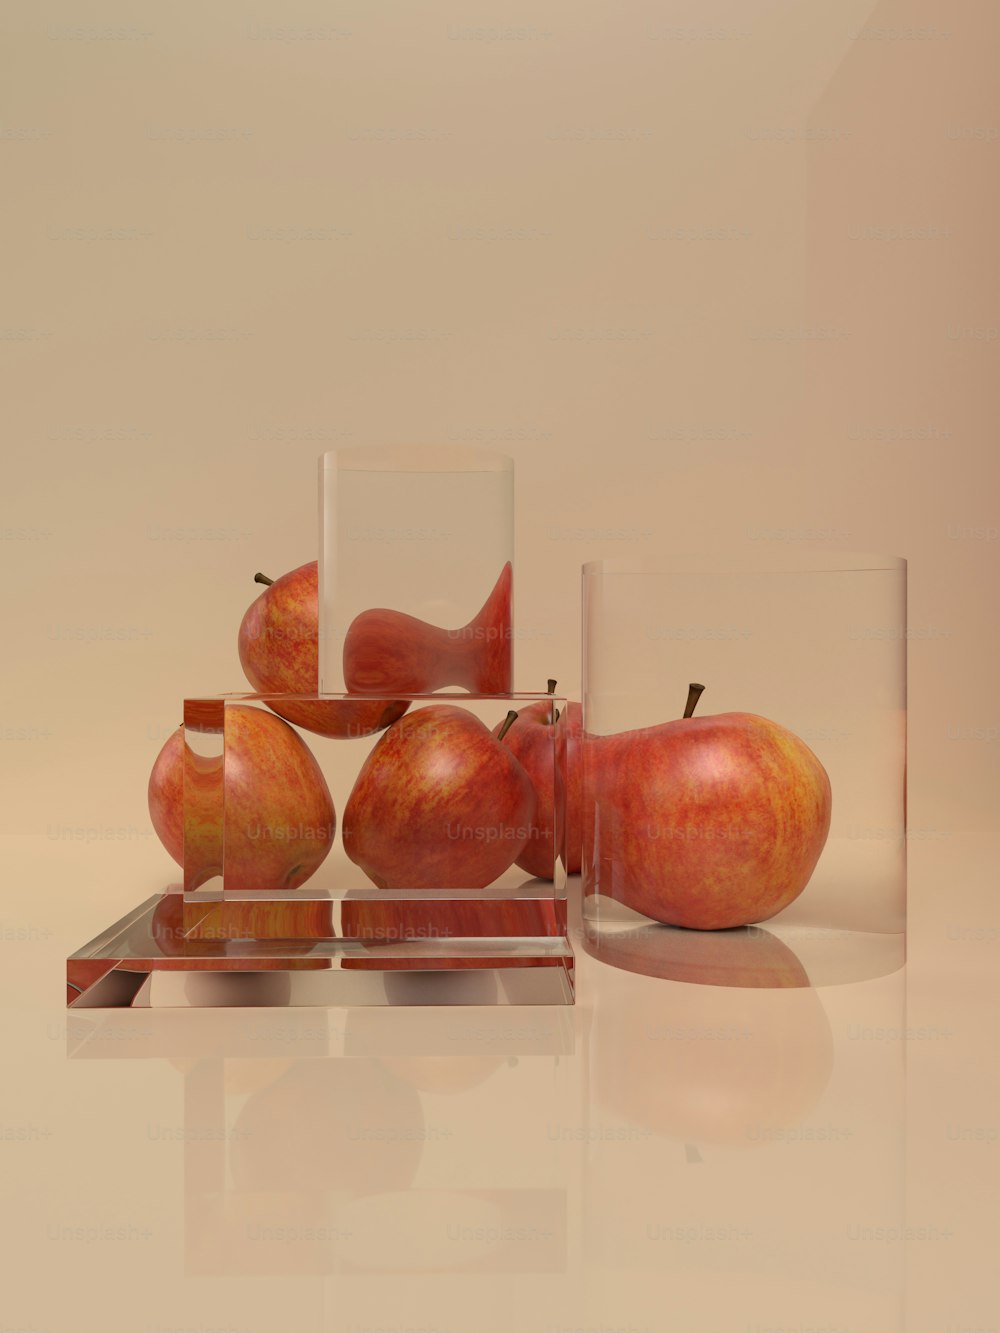 Un grupo de jarrones de vidrio con manzanas en ellos